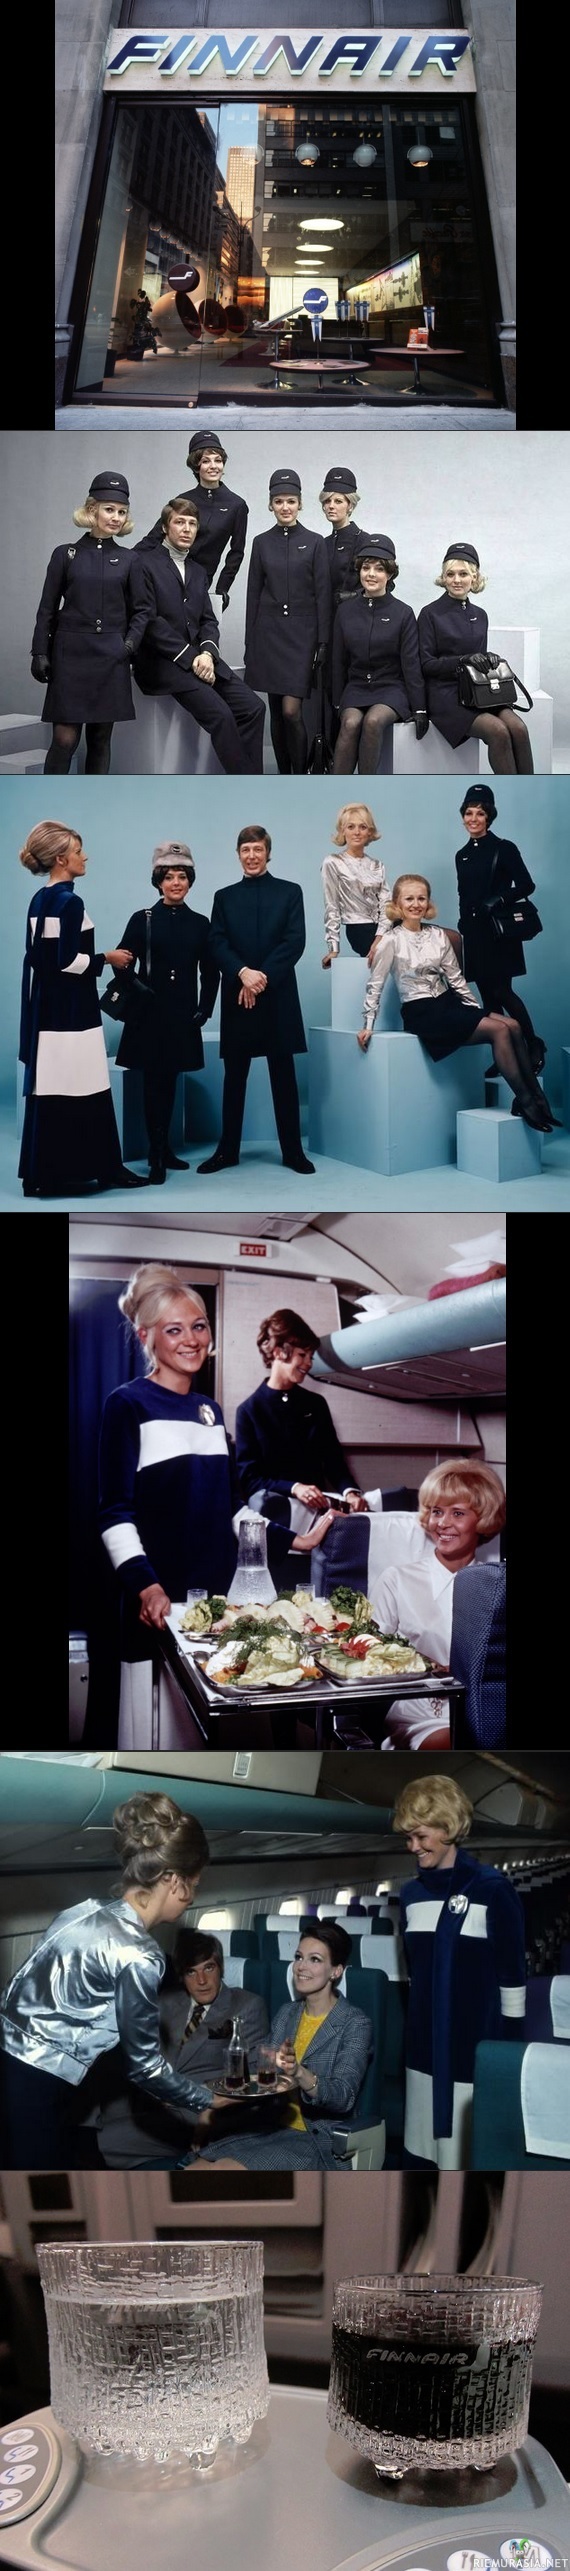 Finnair 1969